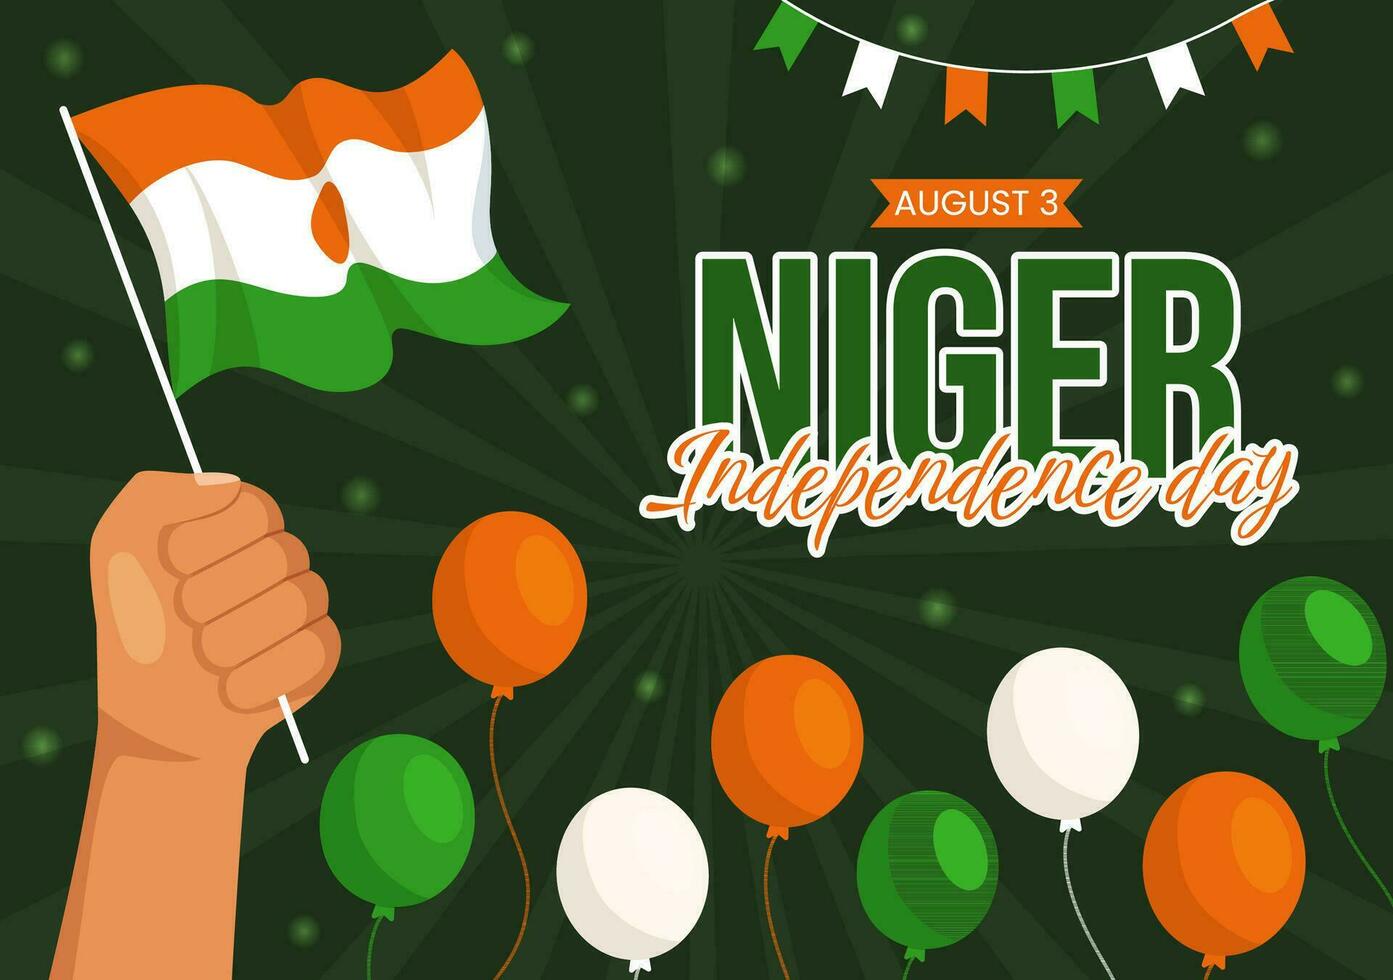 contento Niger repubblica giorno vettore illustrazione con agitando bandiera e nazione pubblico vacanza nel cartone animato mano disegnato atterraggio pagina sfondo modelli